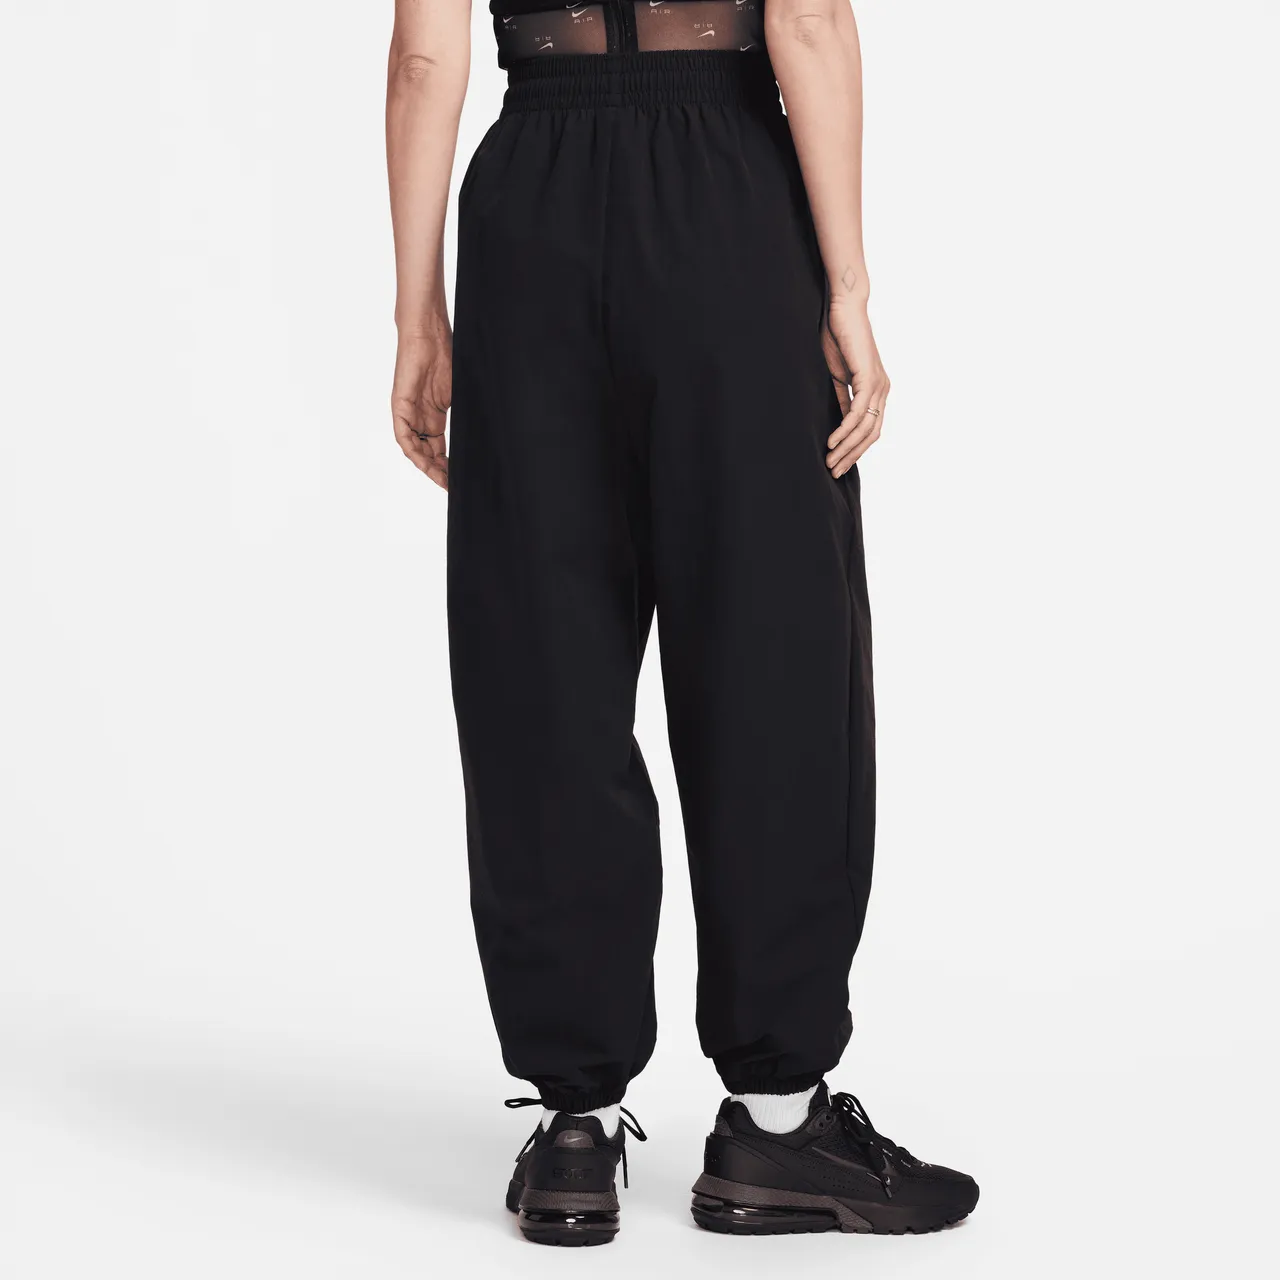 Nike Sportswear geweven joggingbroek voor dames - Zwart